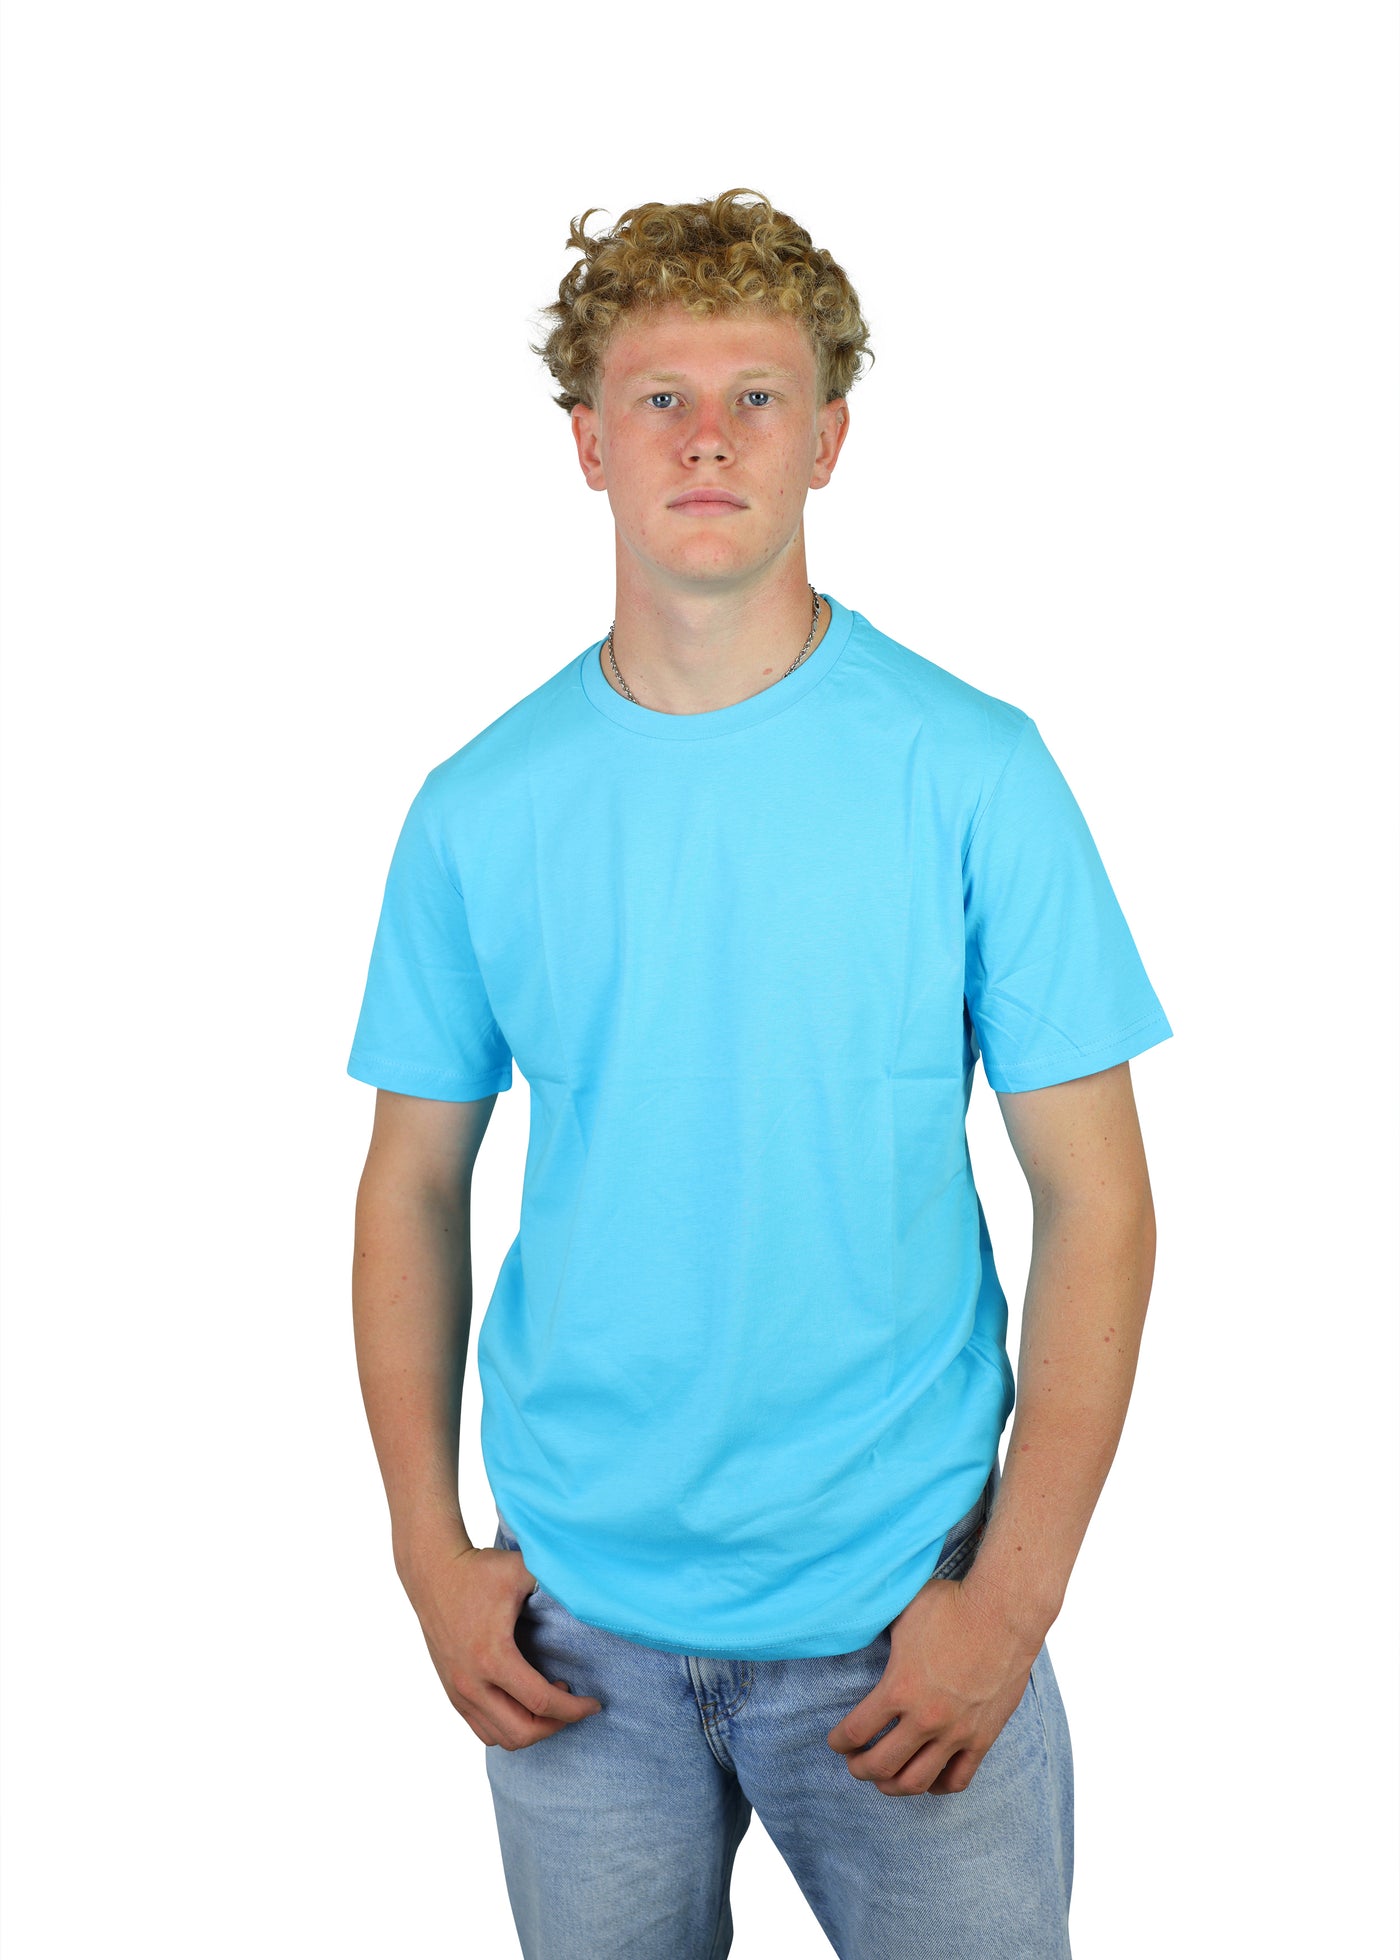 FuPer T-Shirt "Basic Original" Baumwolle unisex (Kinder, Frauen und Herren)